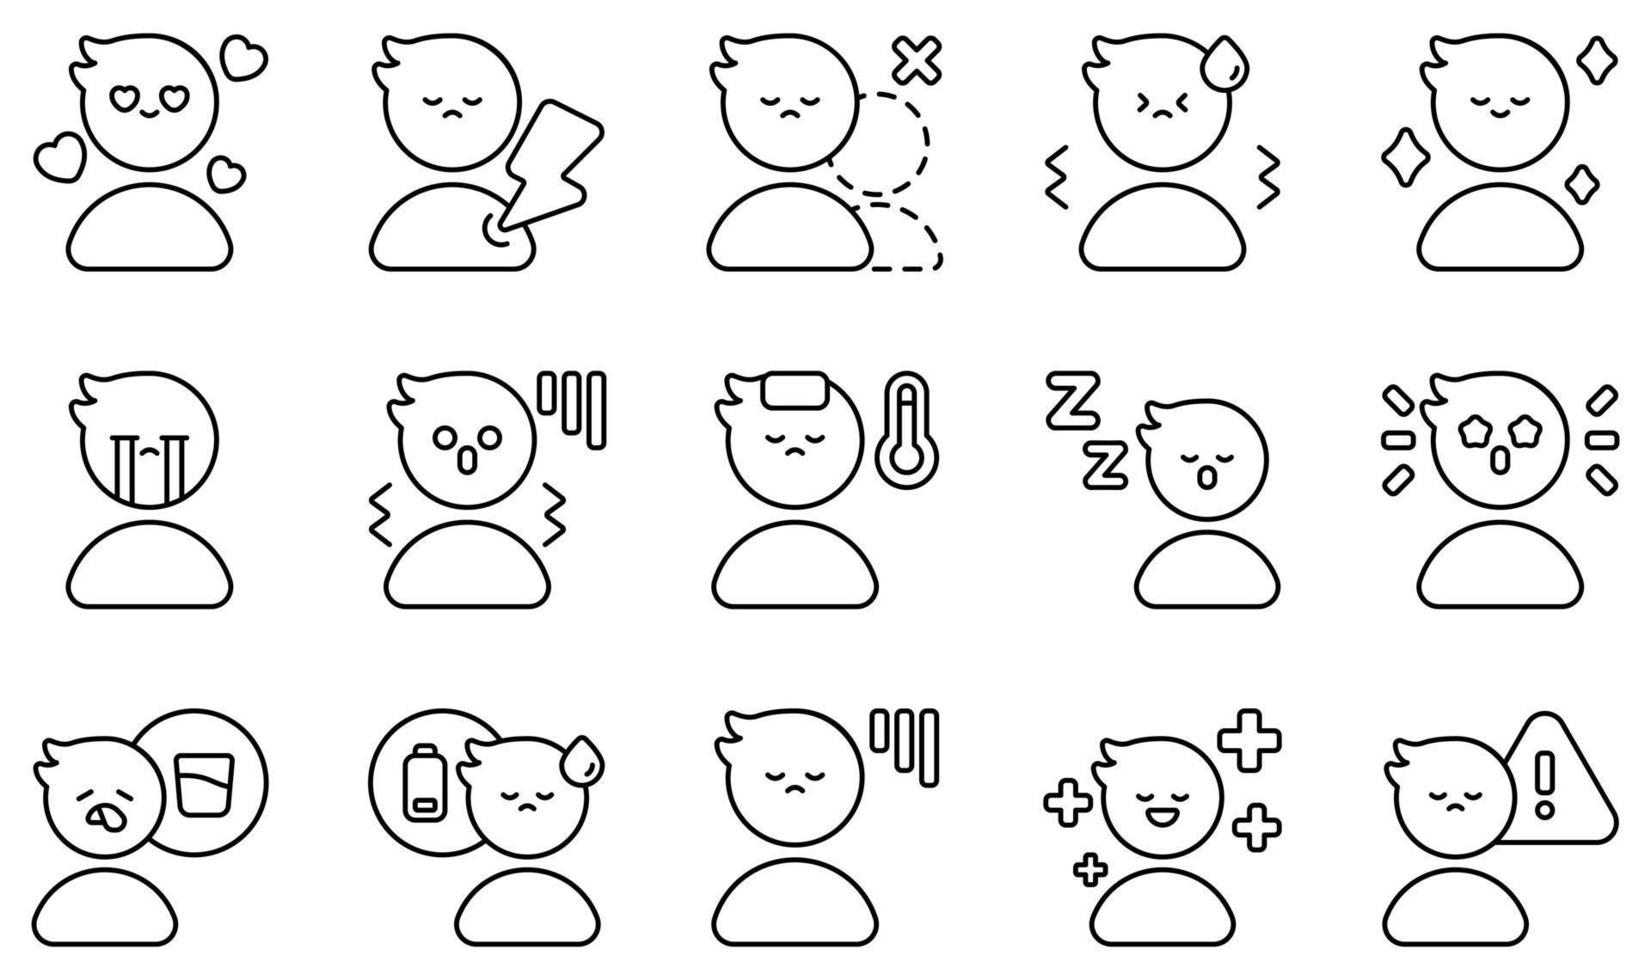 set di icone vettoriali relative al sentimento. contiene icone come innamorato, sofferente, solitario, nervoso, sollevato, triste e altro ancora.